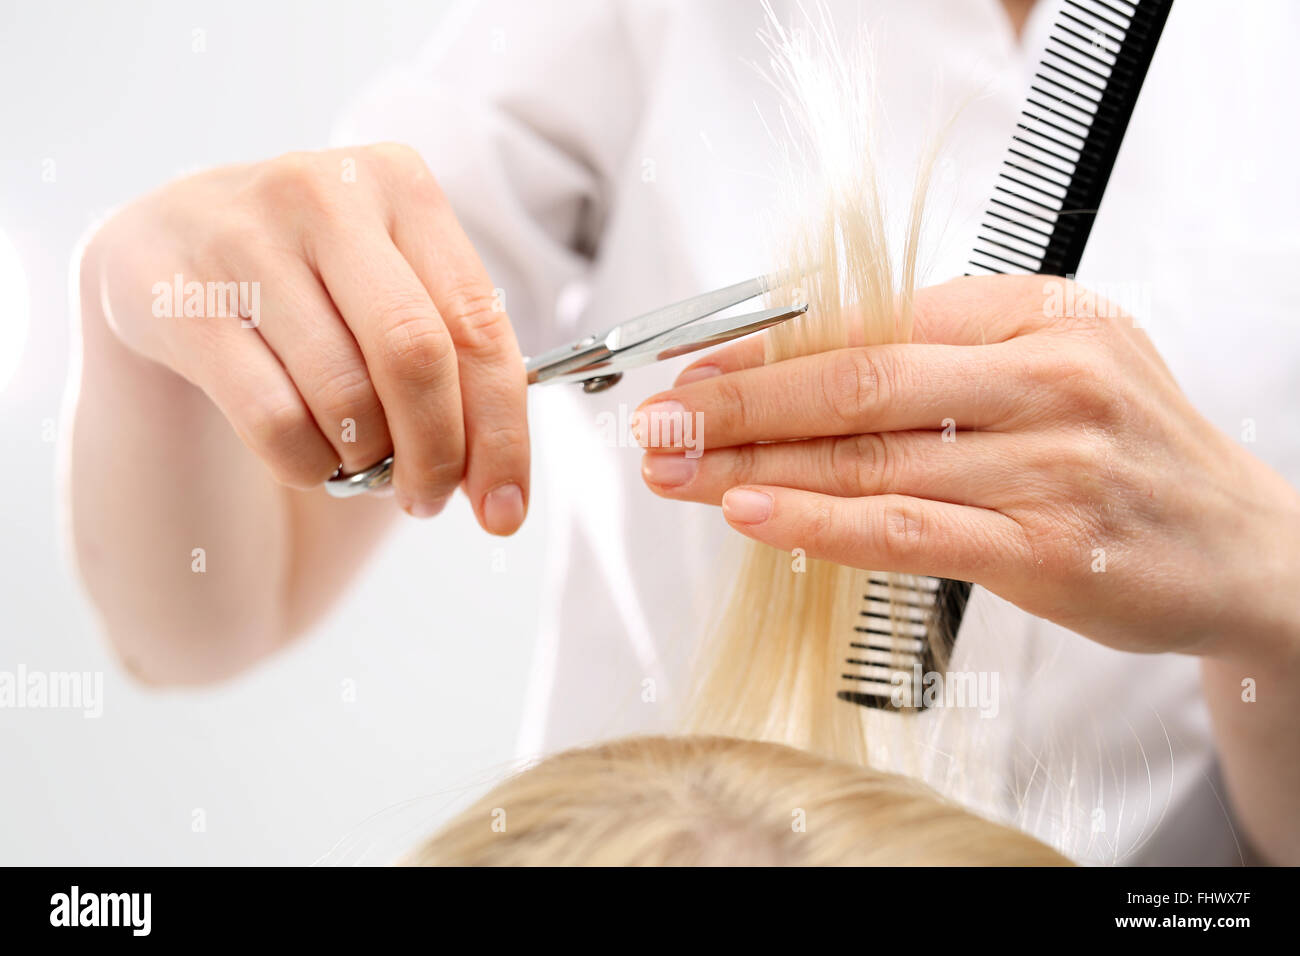 Corte de pelo de peluquería mujer en una peluquería. La subcotización finaliza la división del cabello Foto de stock